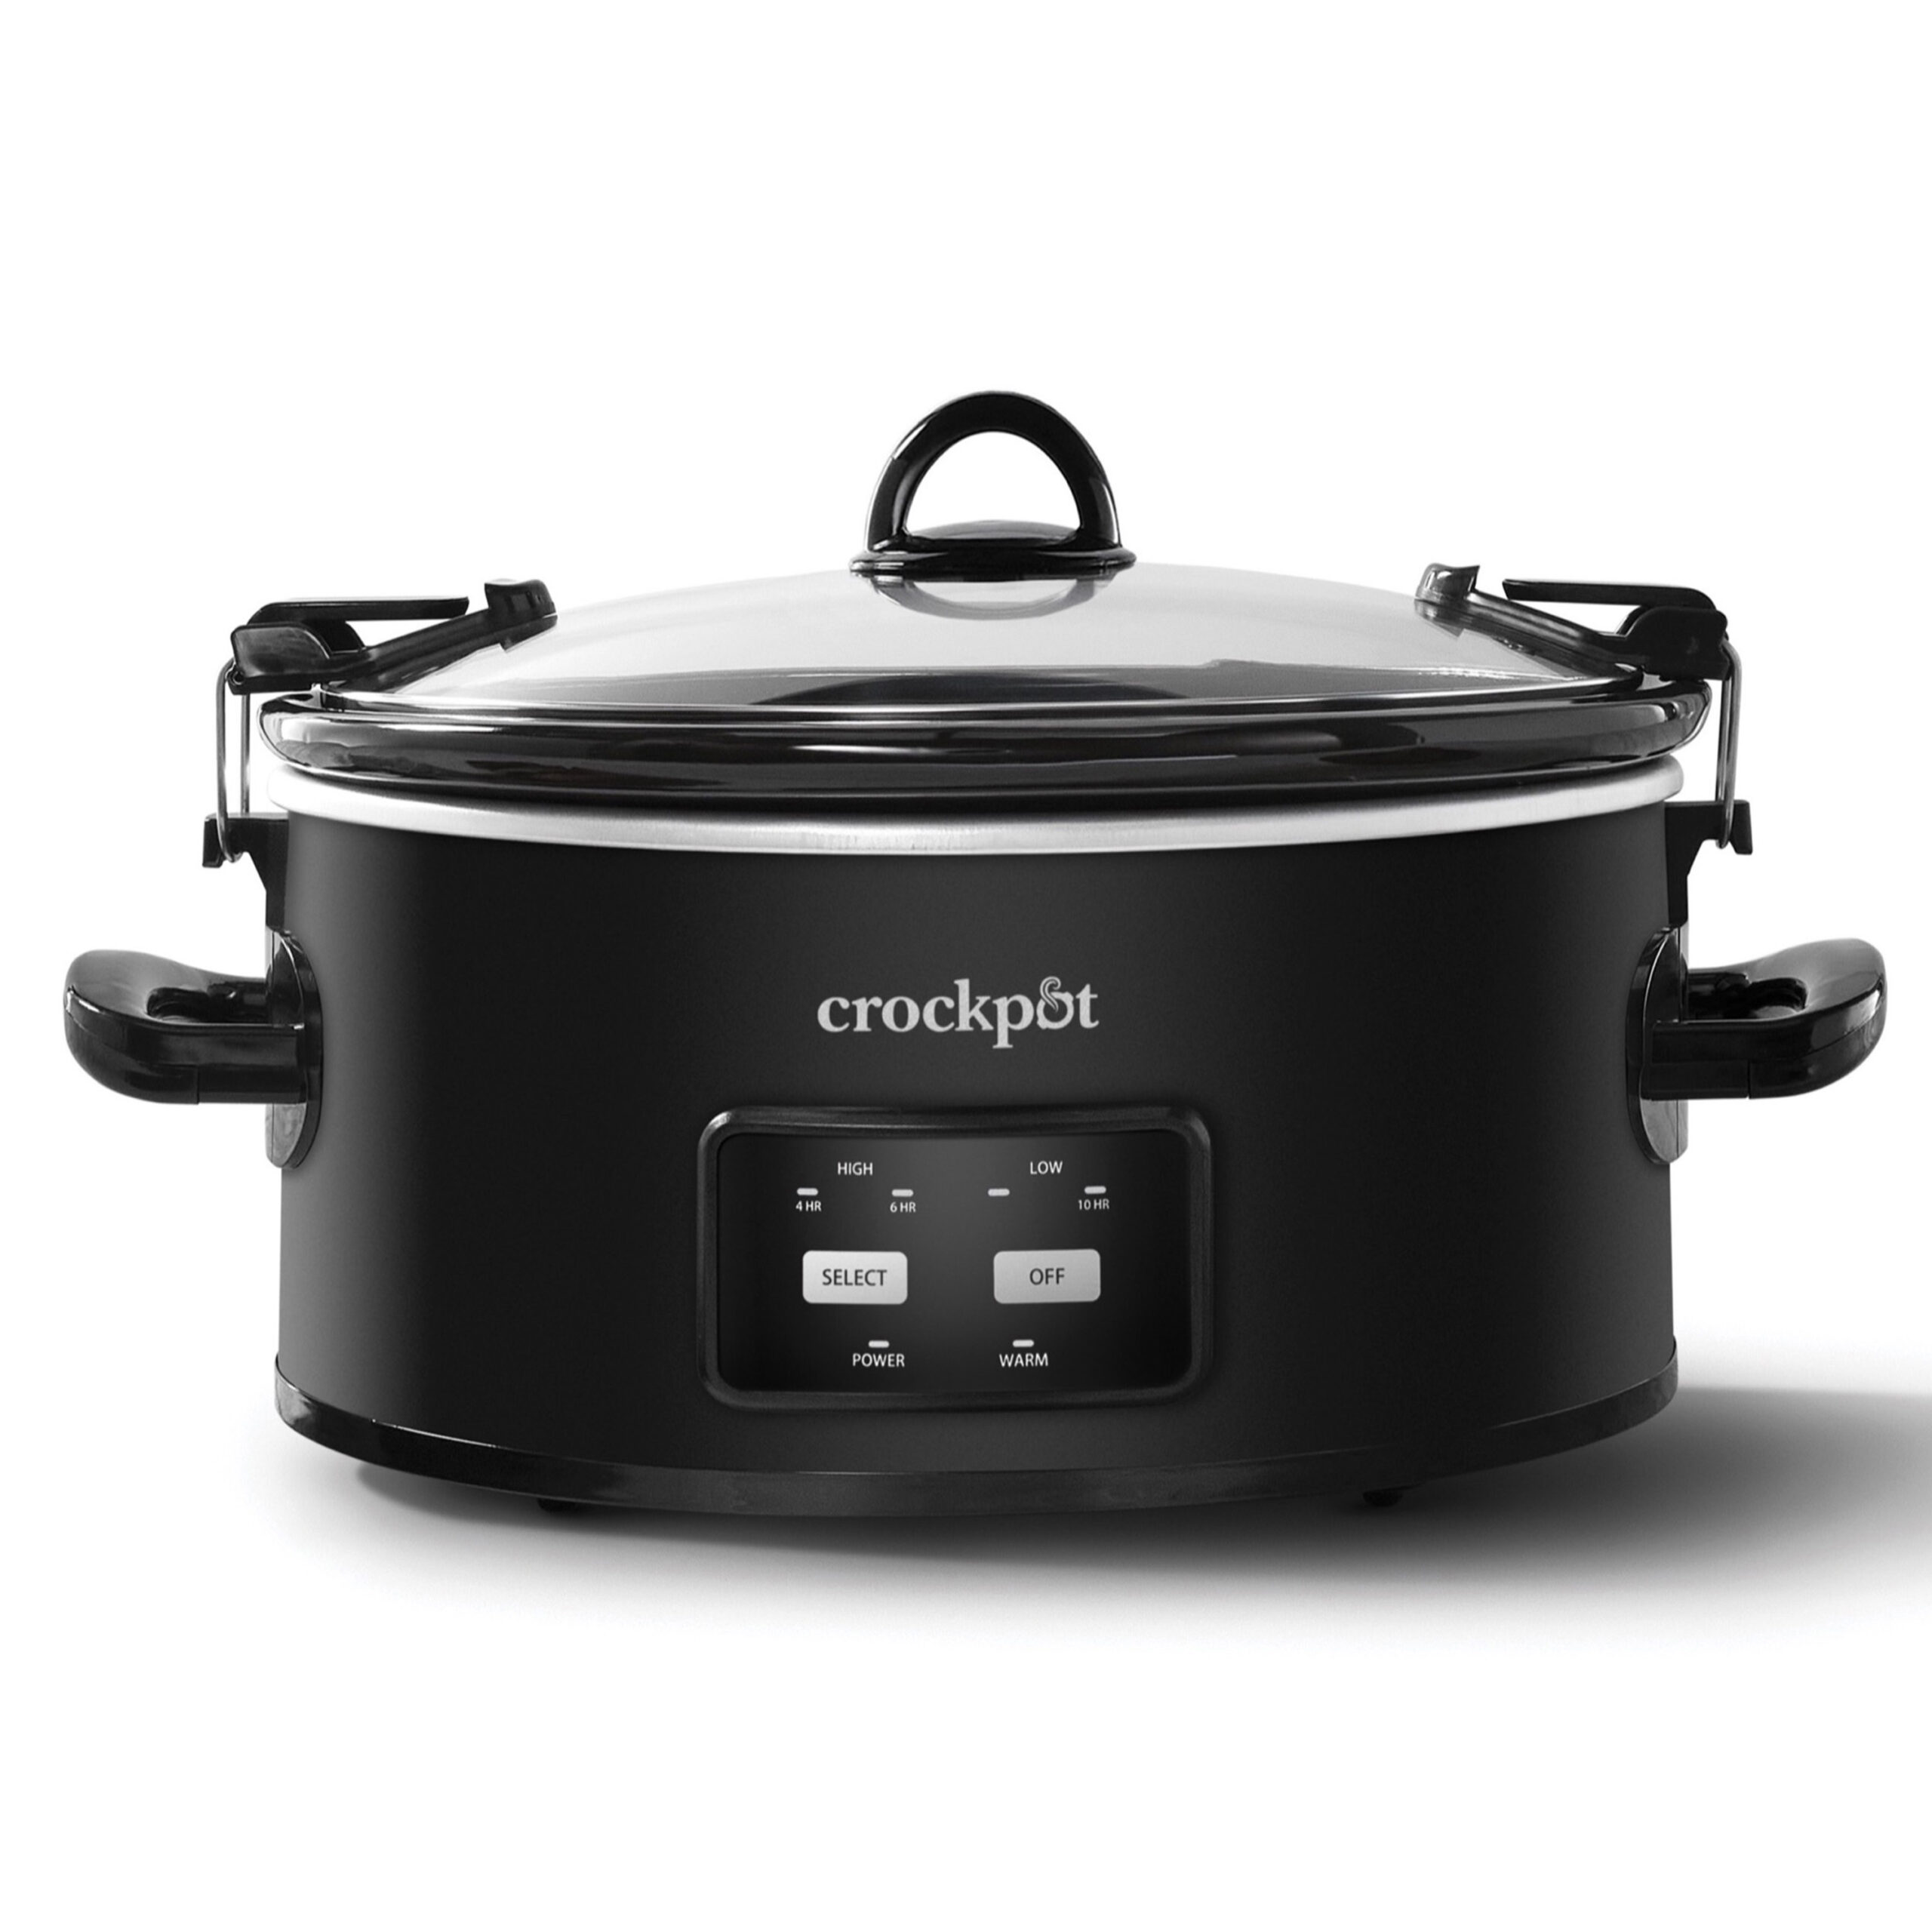 Crockpot 6 Qt One-Touch Slow CookerJCS Home Appliances